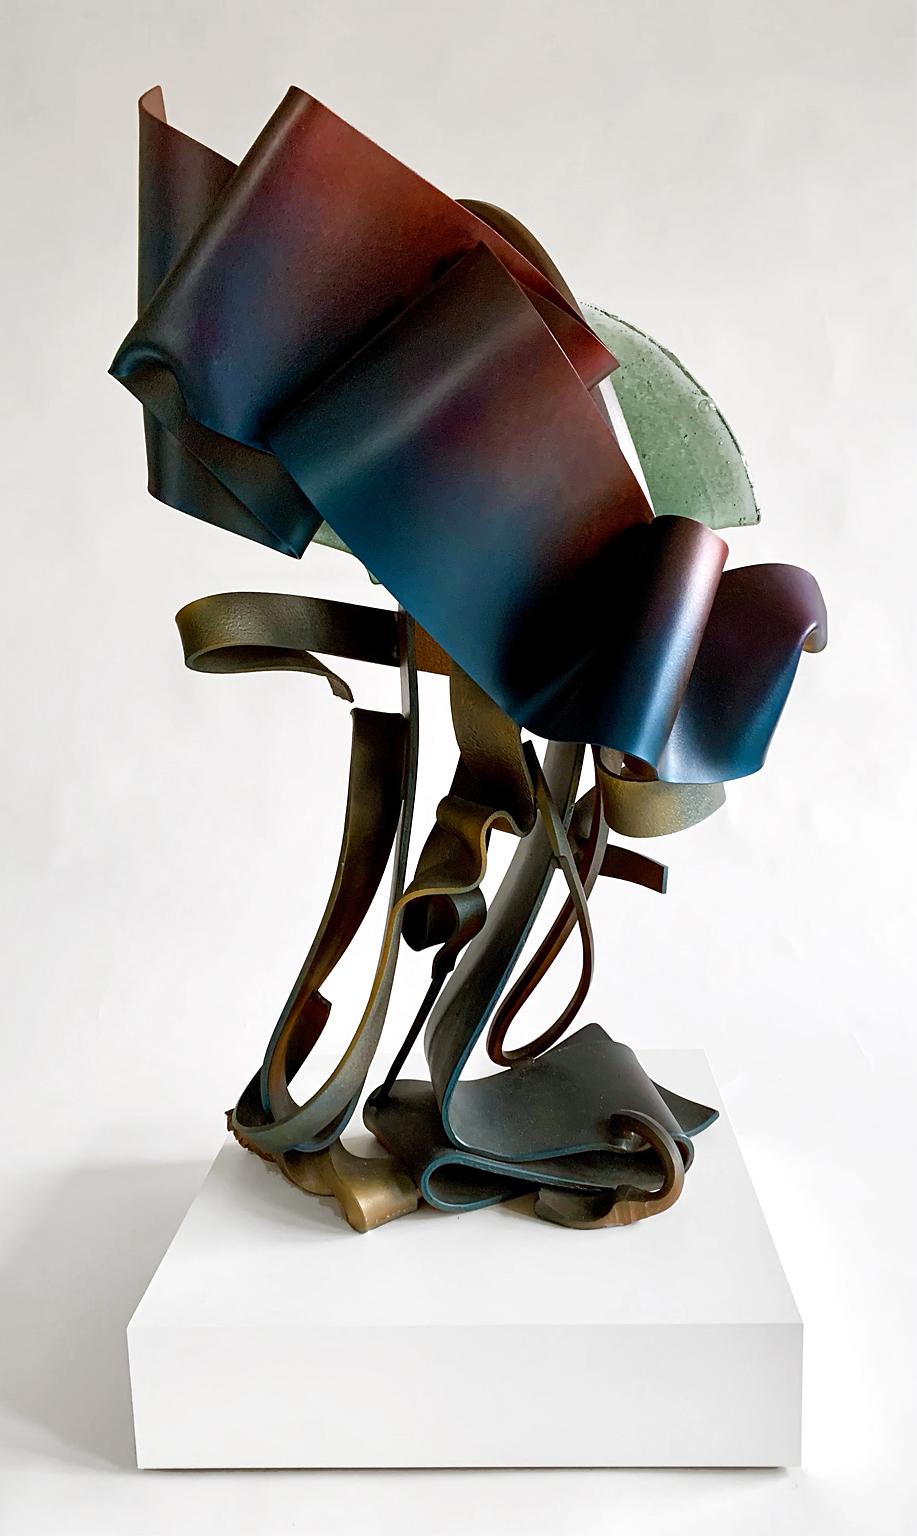 Abstrakte Skulptur „Arc III“ aus Stahlmetall und Gussglas, Industrie – Sculpture von Albert Paley